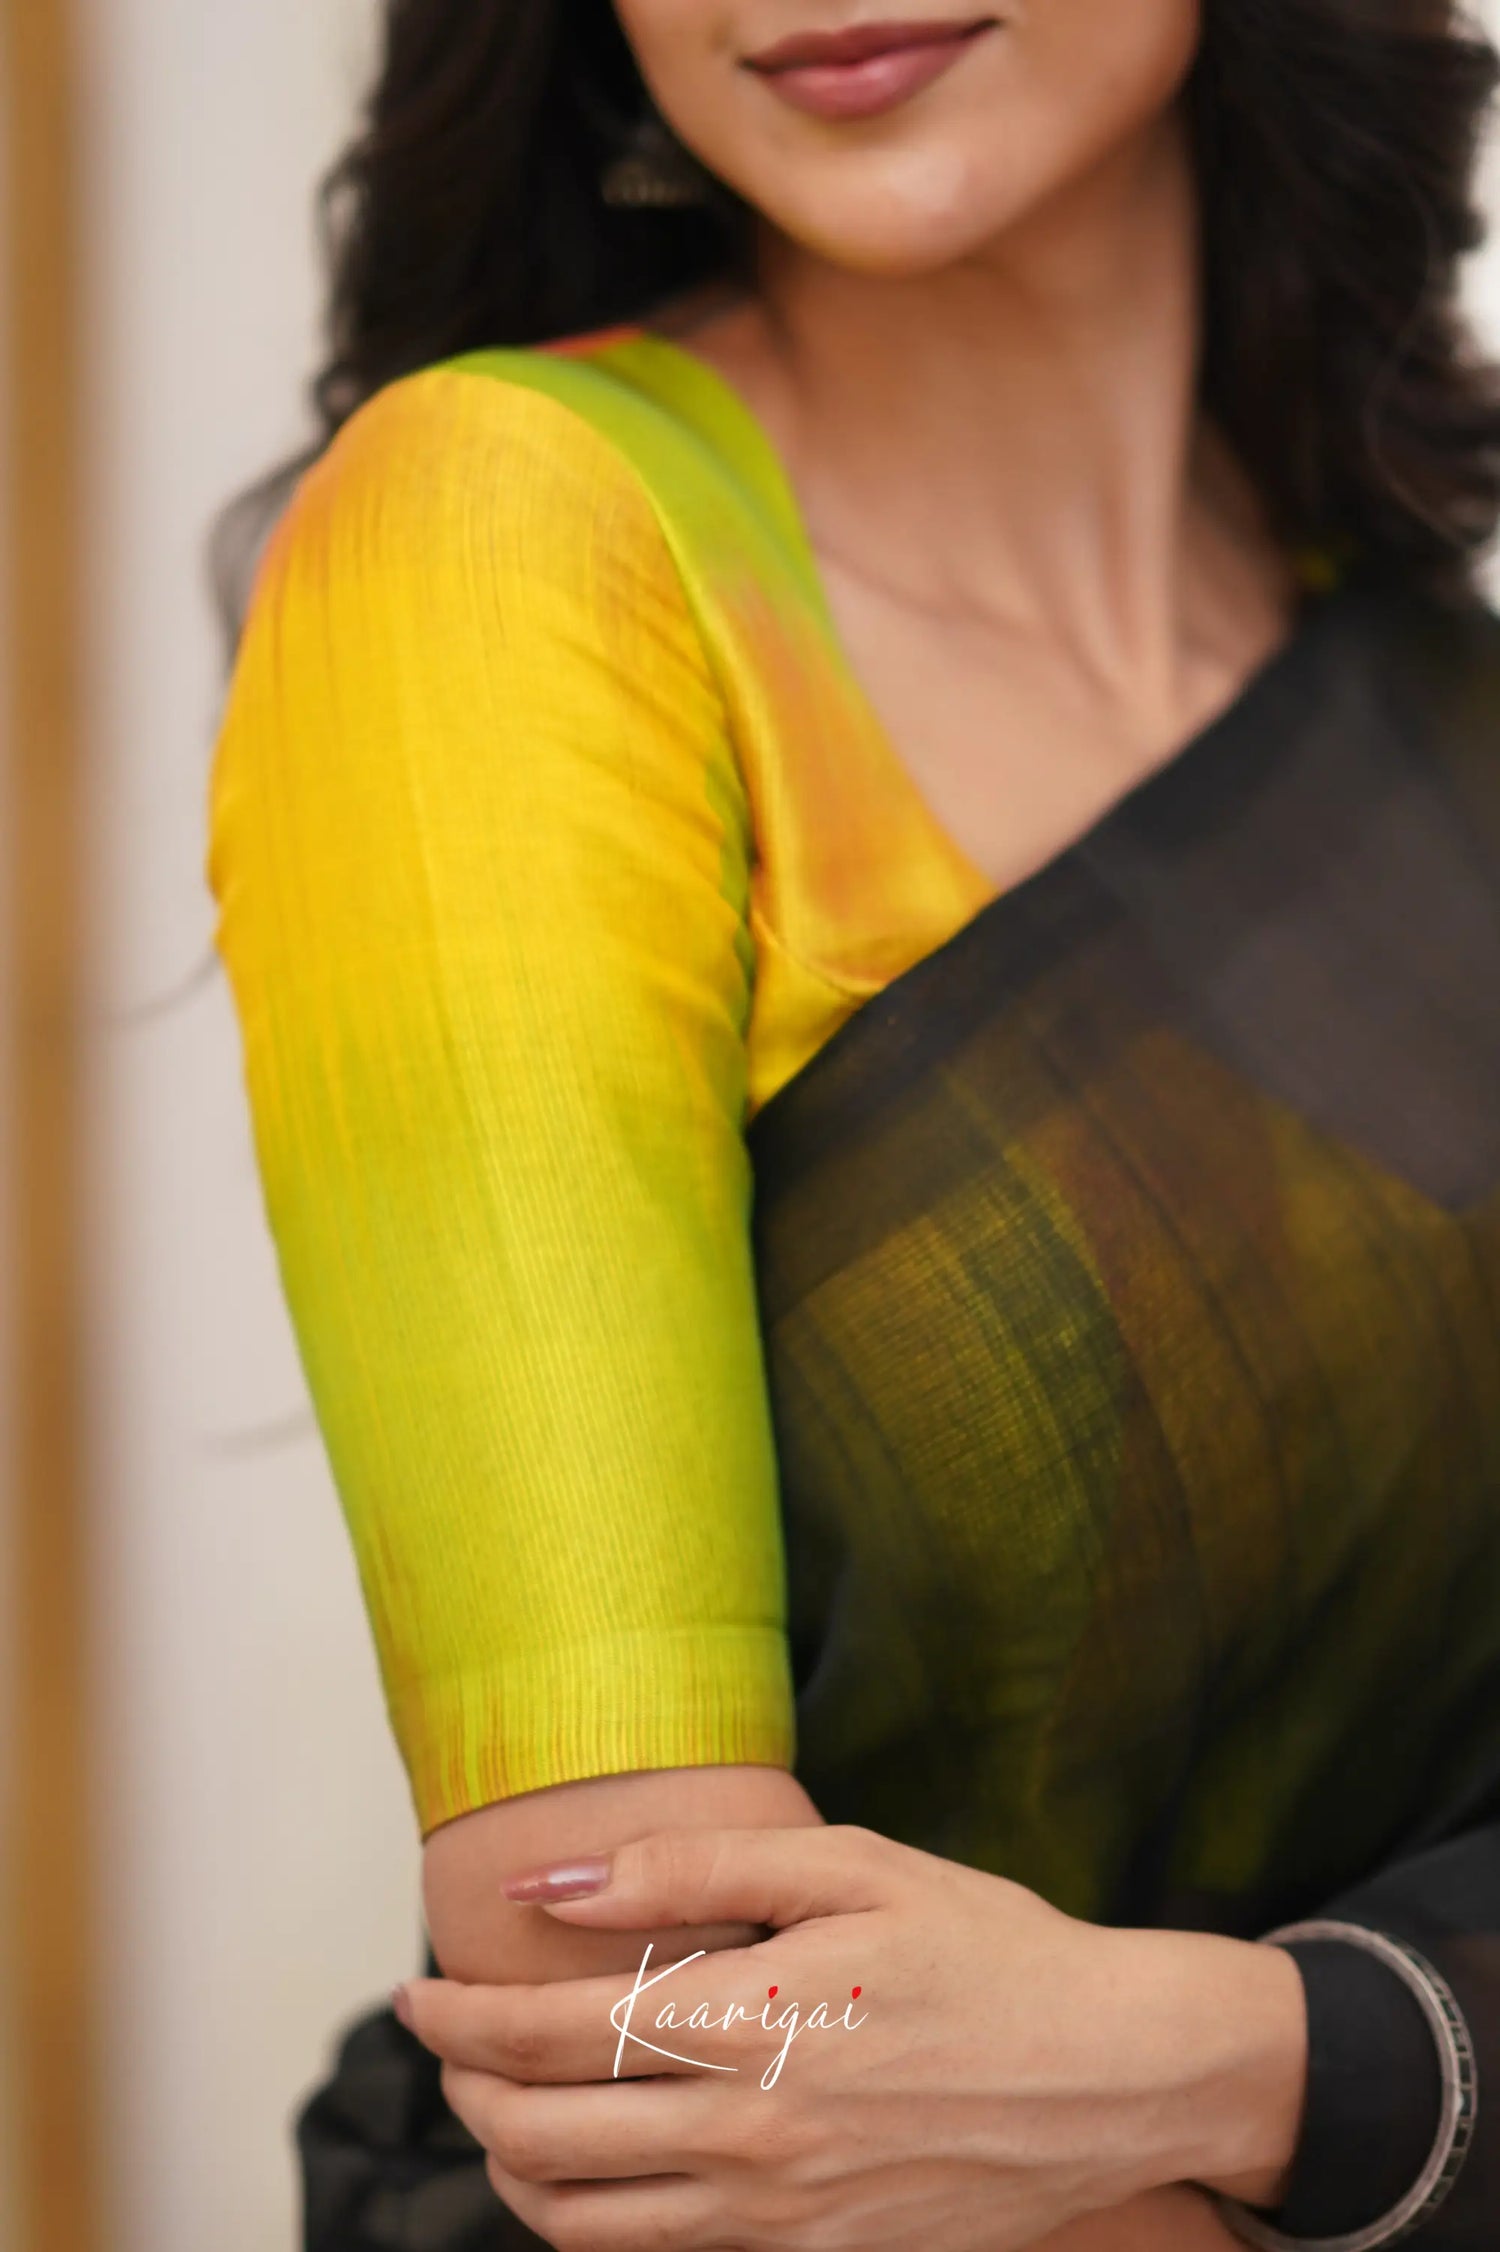 Madura Mangalagiri Saree - Black And Yellow Sarees